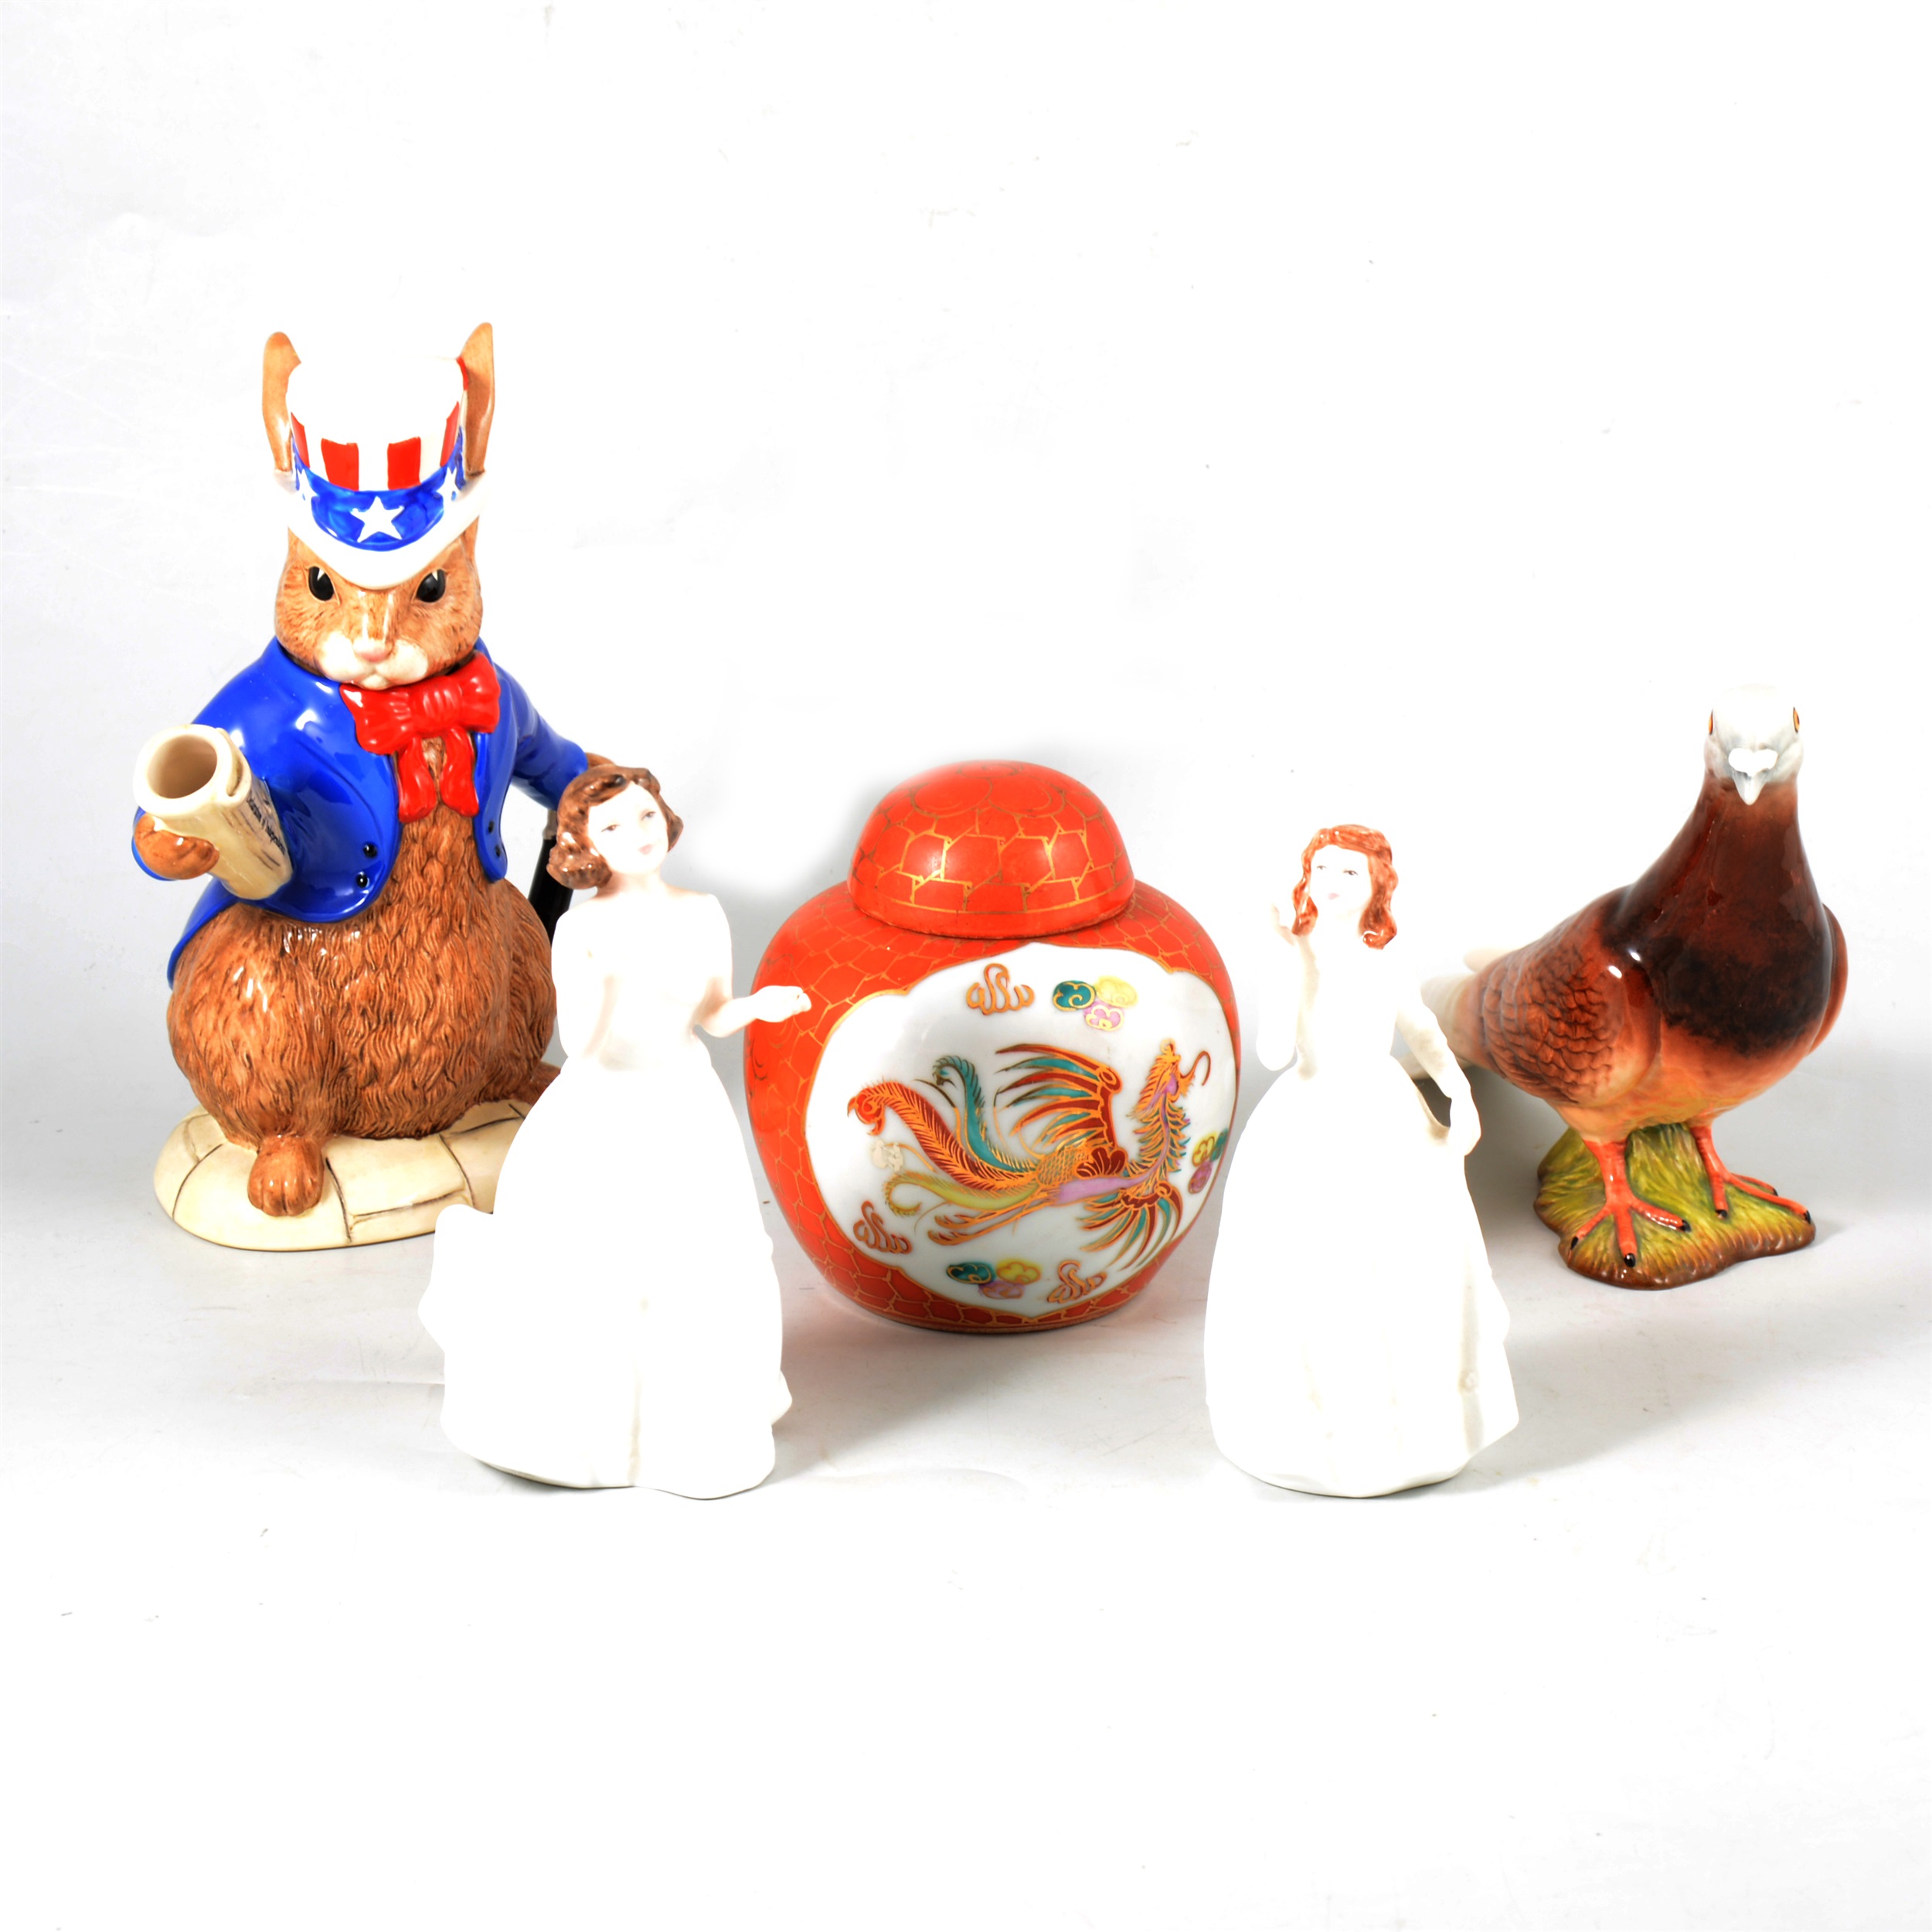 Assorted decorative ceramics and tableware.